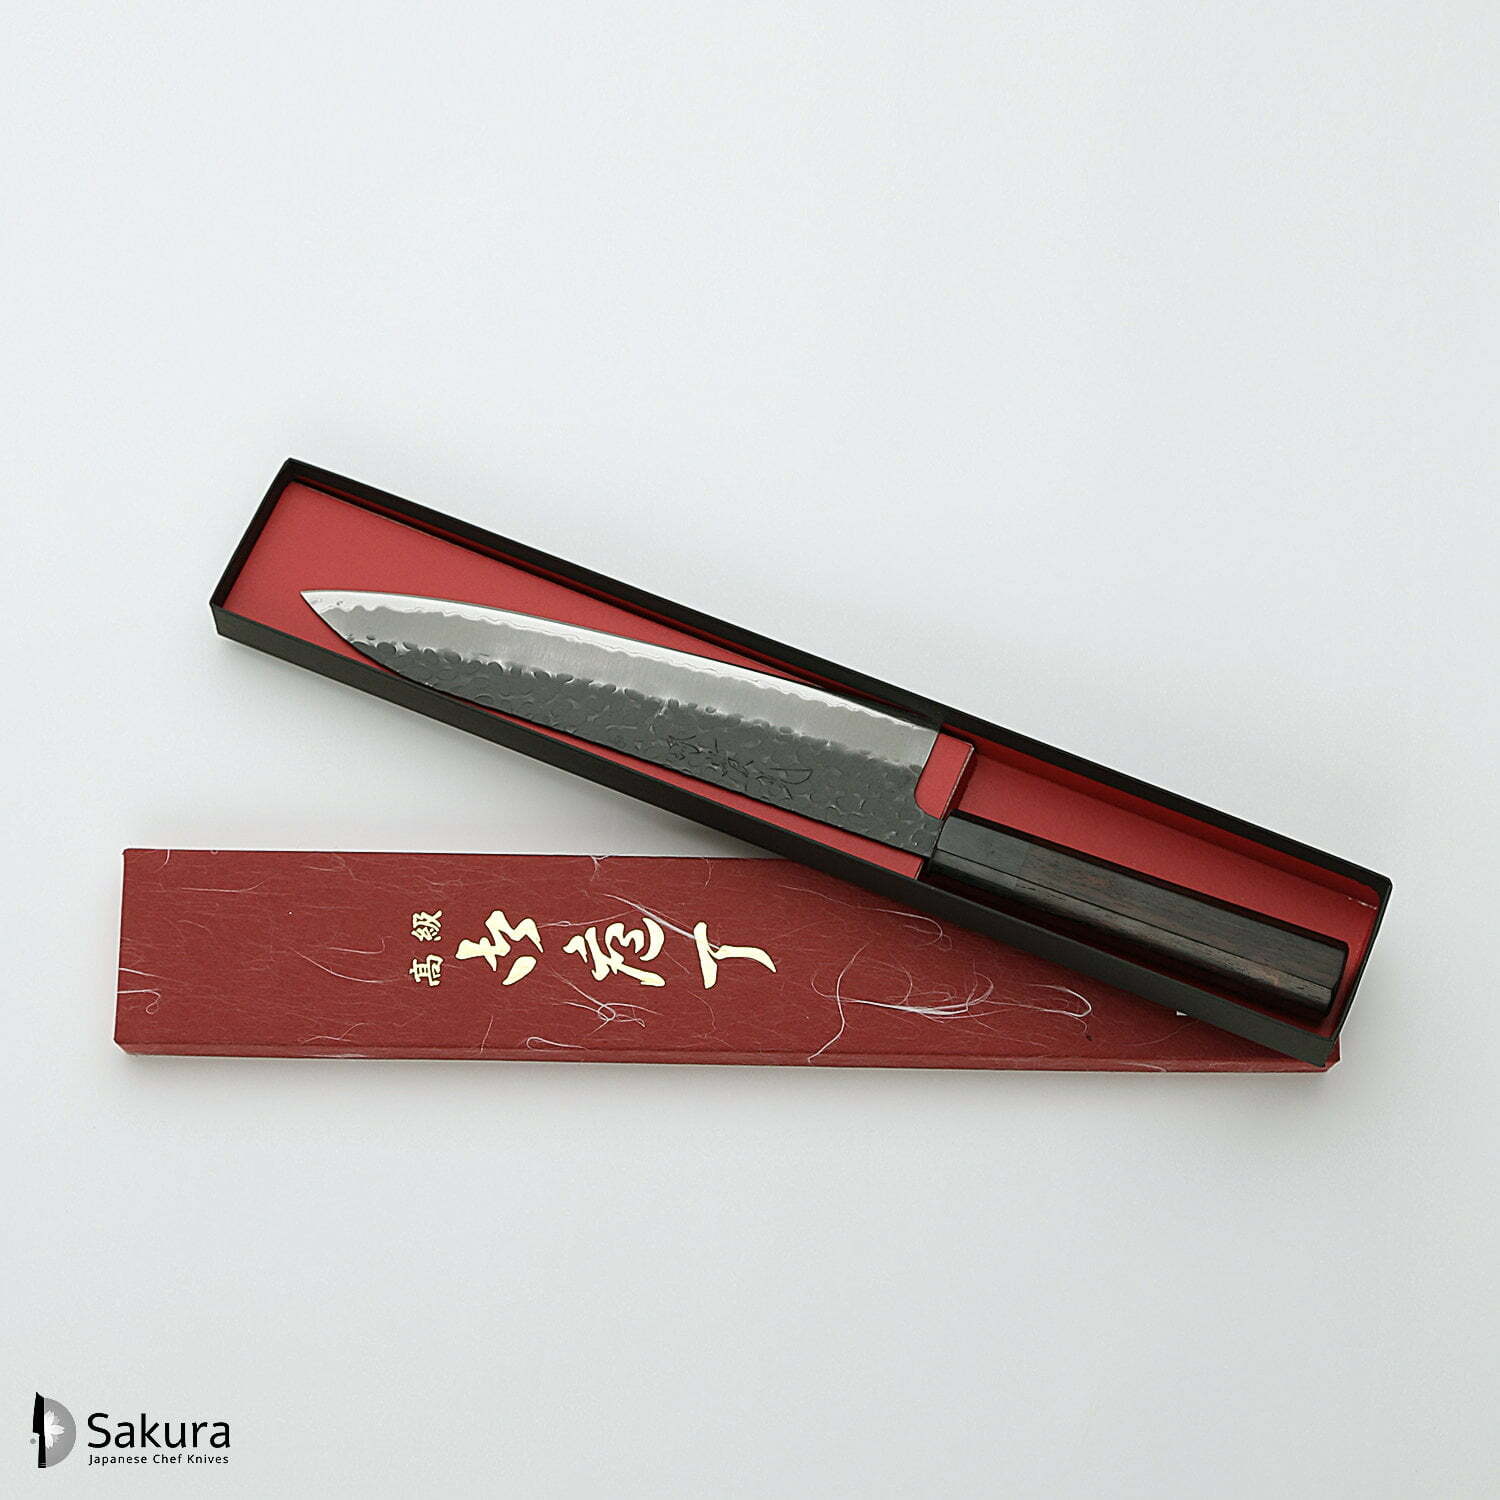 סכין שף רב-תכליתית גִּיוּטוֹ 210מ״מ מחוזקת 3 שכבות: פלדת פחמן יפנית מתקדמת מסוג Aogami Super עטופה פלדת אל-חלד גימור קורואיצ׳י שחור עם ריקוע פטיש ג׳יקו סאקאיי יפן